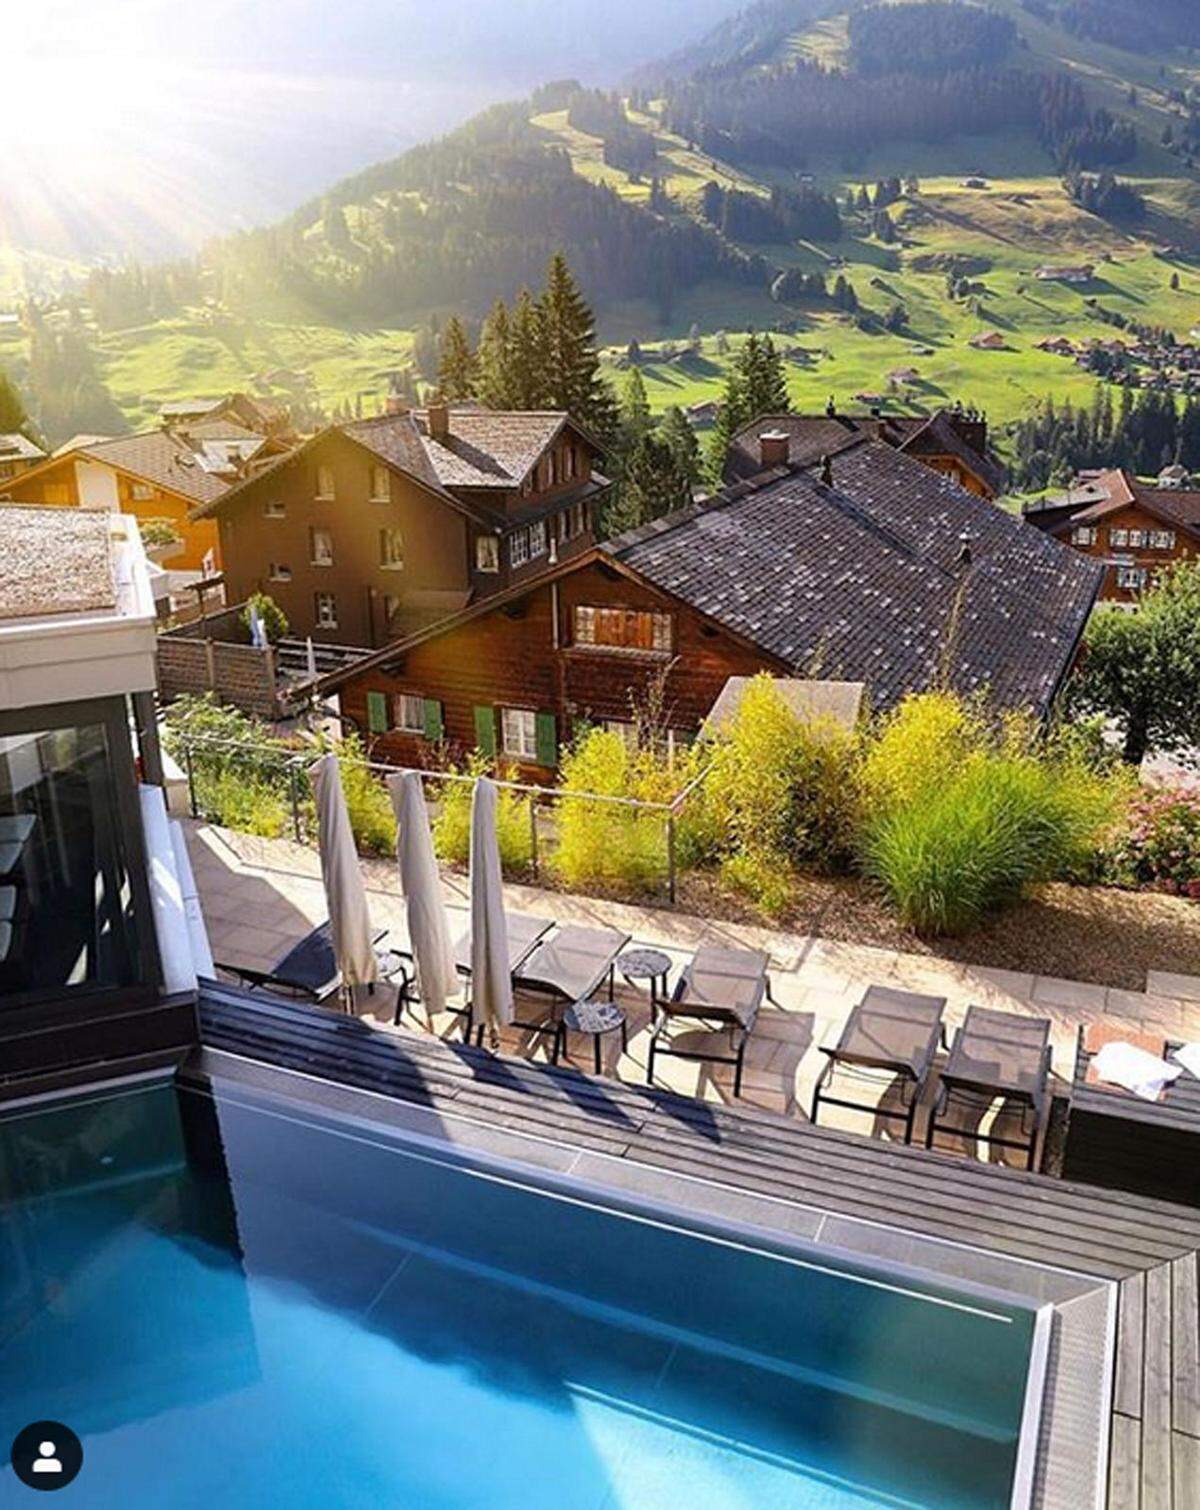 Die "Times" wählte den Pool, der sich auf 1350 Metern Höhe befindet und einen traumhaften Panoramablick auf die Schweizer Alpen bietet, bereits zum "Außenpool mit der schönsten Aussicht weltweit".